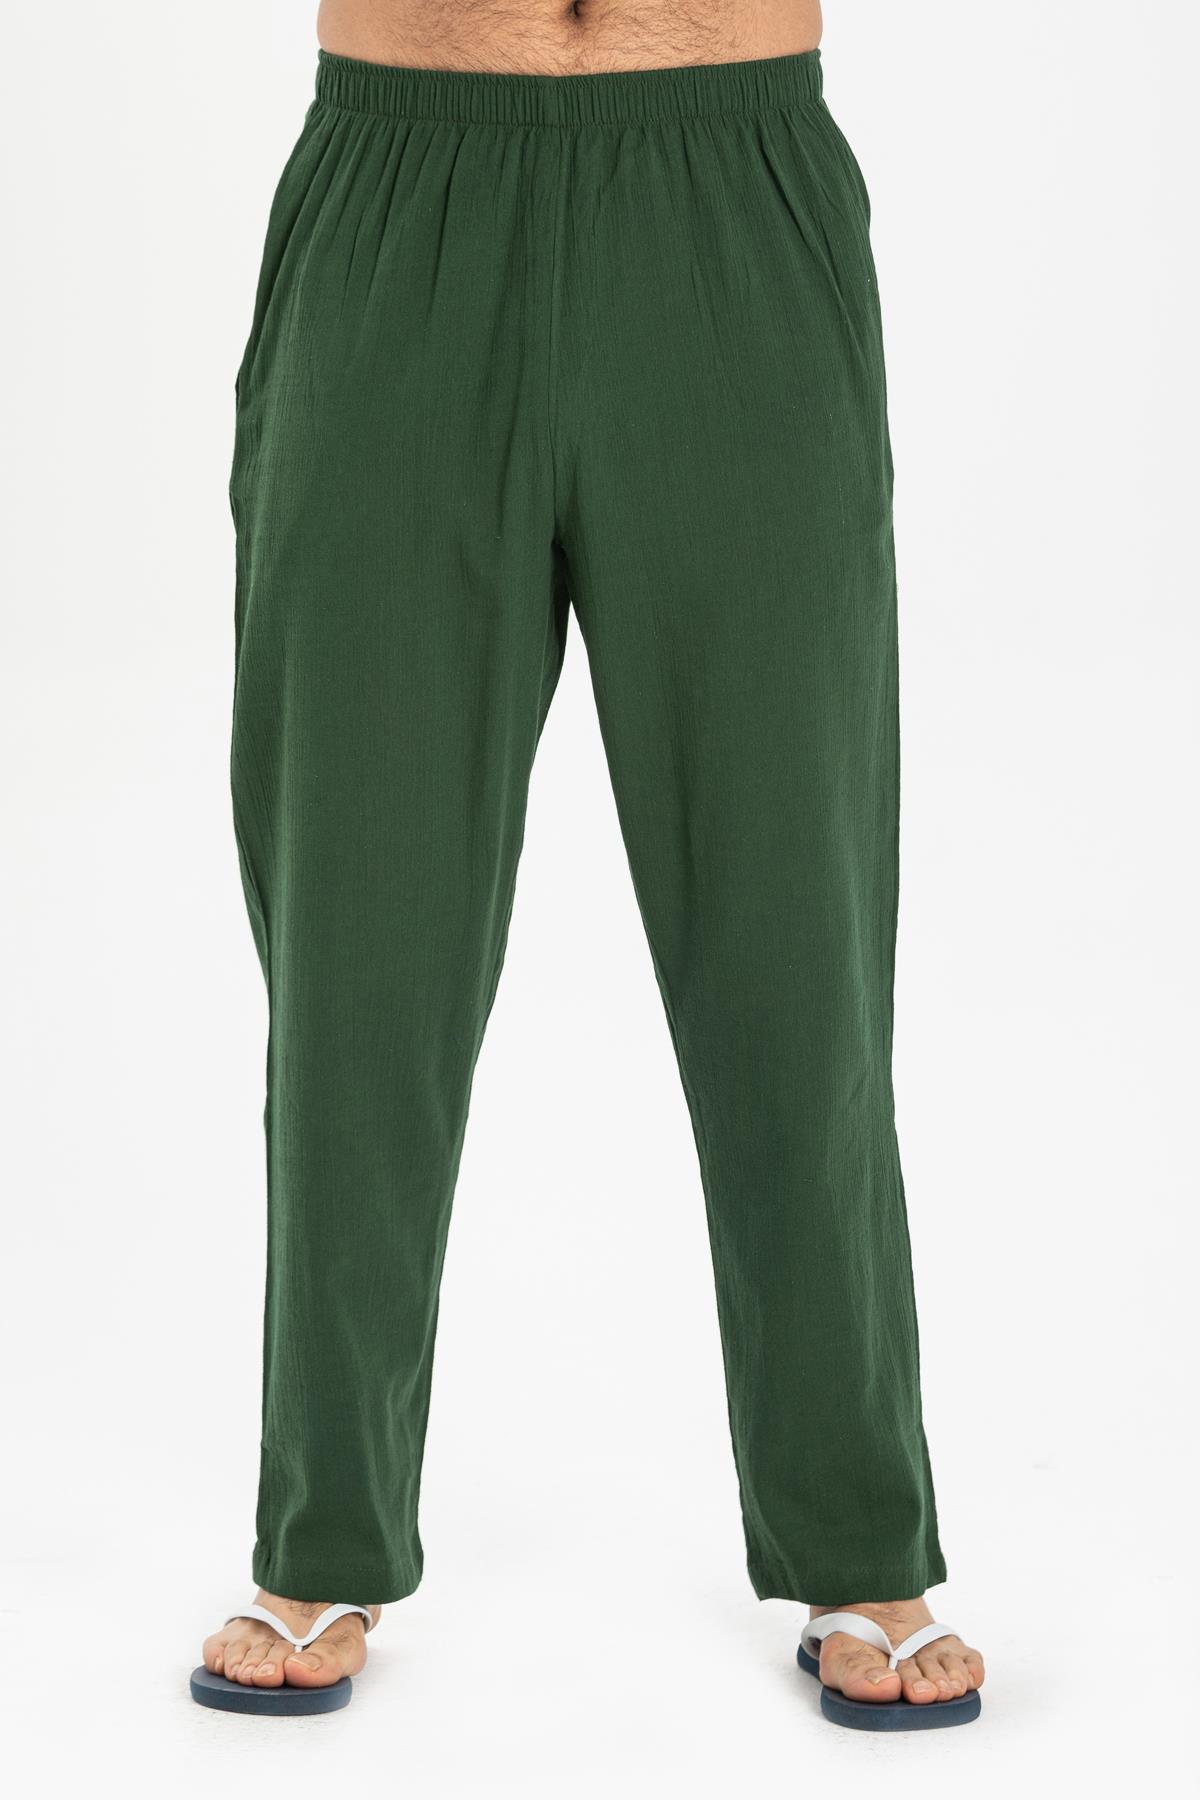 Şile Bezi Erkek Şalvar Pantolon Yeşil | silemoda.com